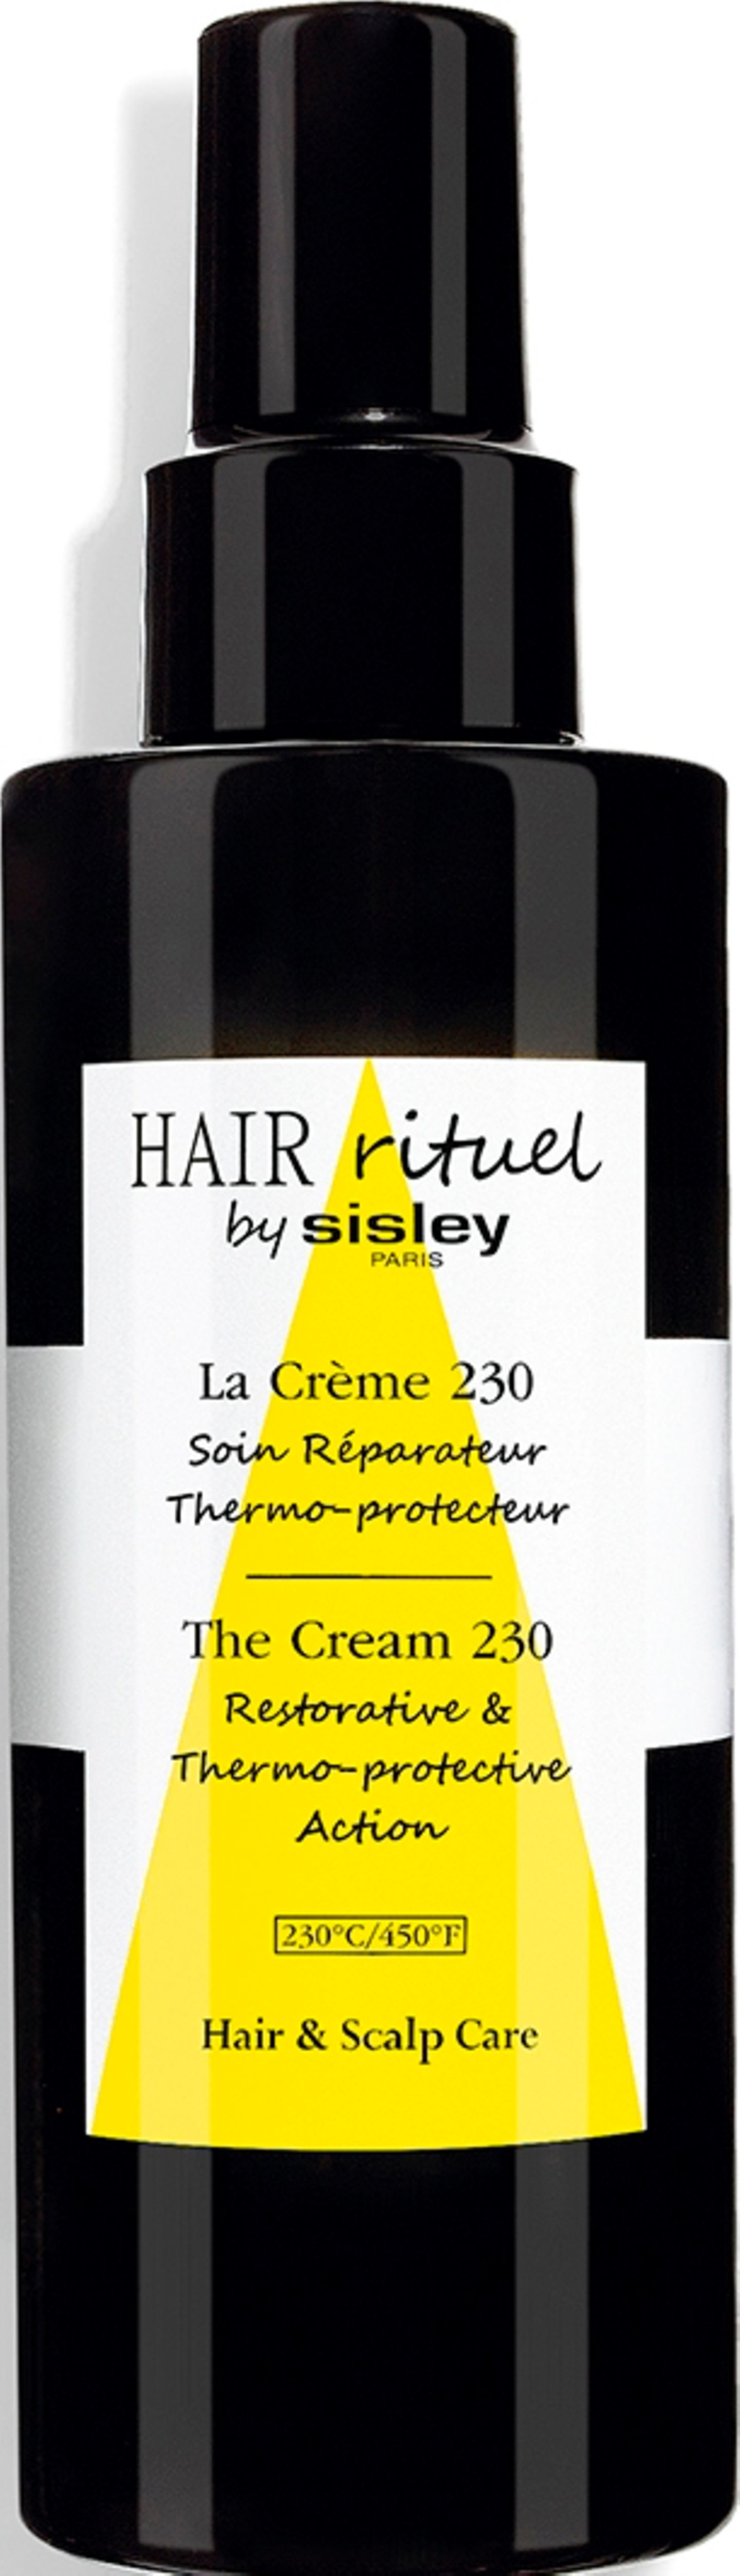 "Hair Rituel La Crème 230" von Sisley Paris, 150 ml ca. 77 Euro.